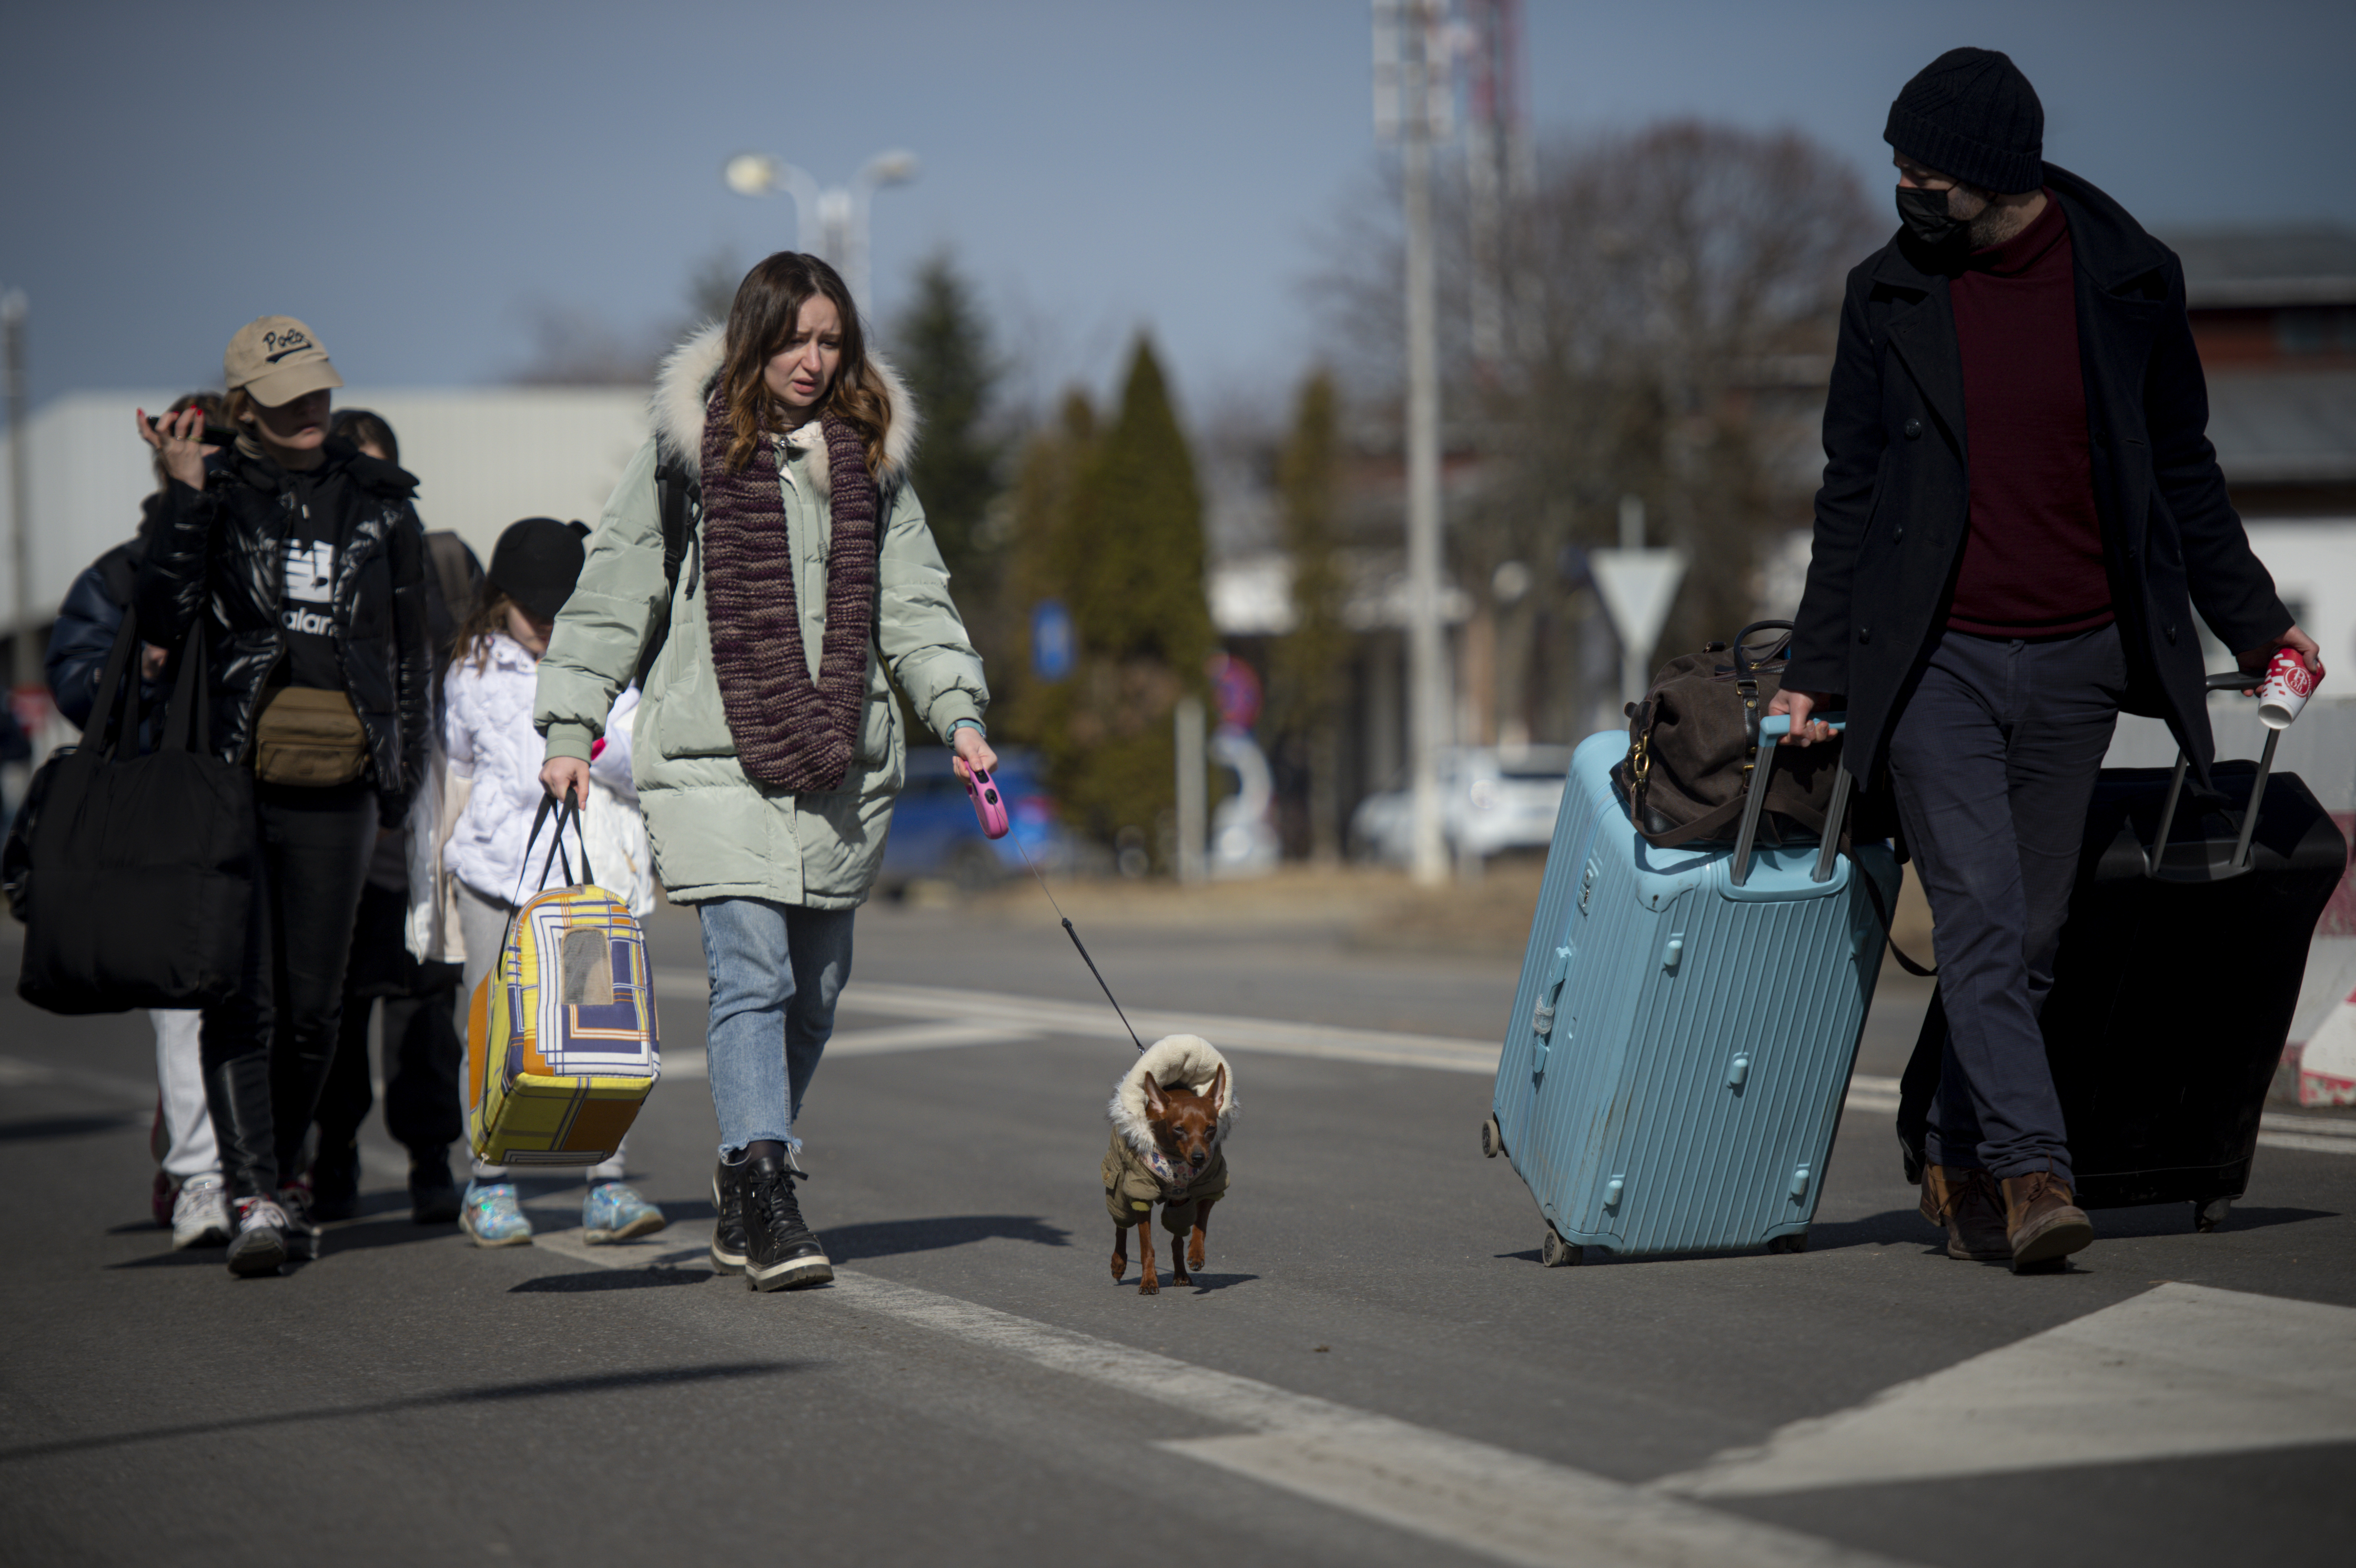 Menschen gehen auf einer Straße in Siret, nachdem sie die Grenze zur Ukraine an der rumänisch-ukrainischen Grenze überquert haben.  | dpa